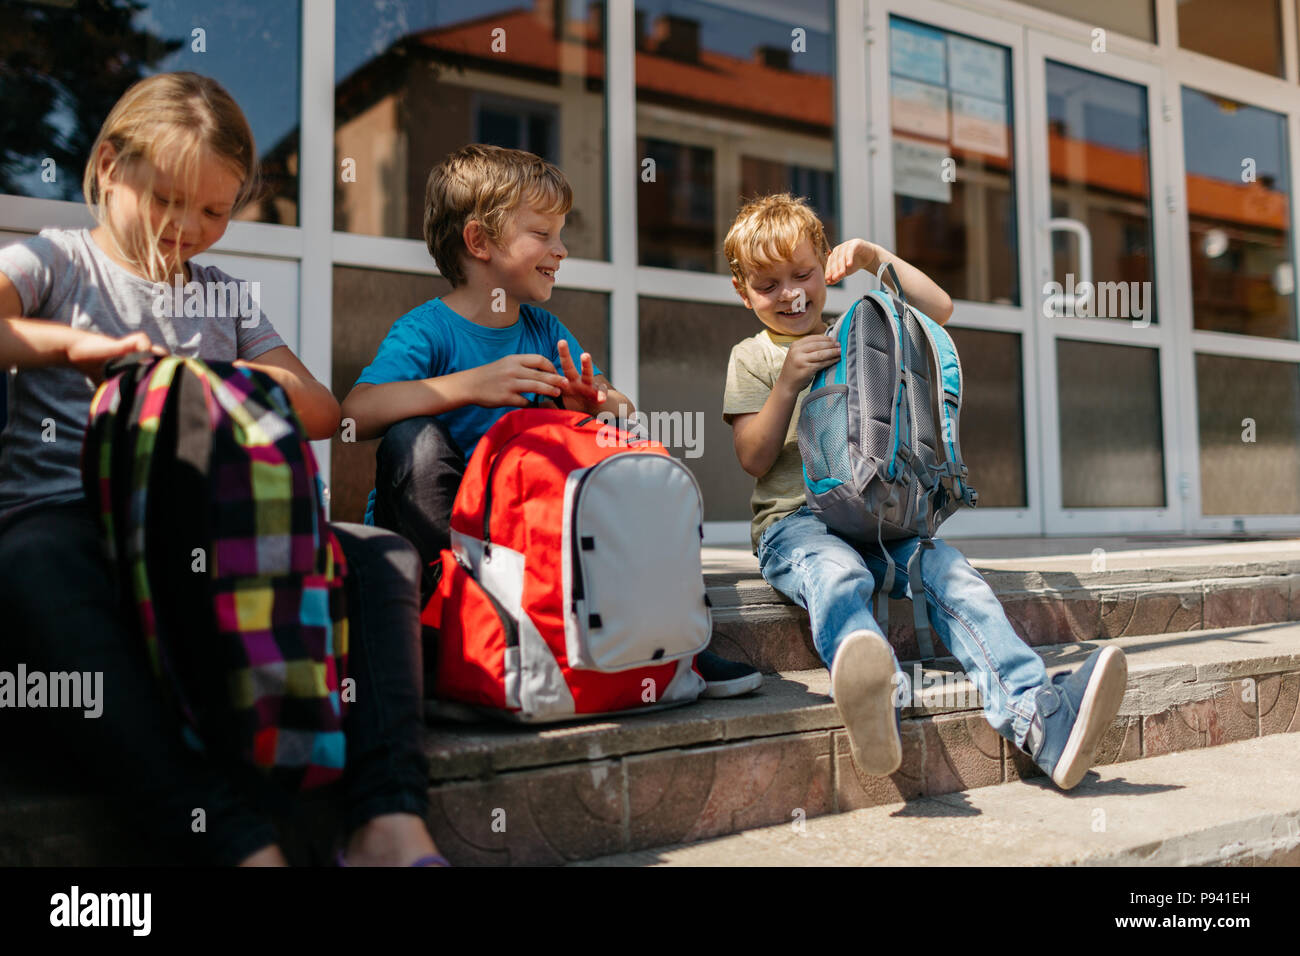 Allegro scuola bambini durante una pausa. Bambini sorridenti con schoolbags seduti sulle scale al di fuori della scuola. Foto Stock